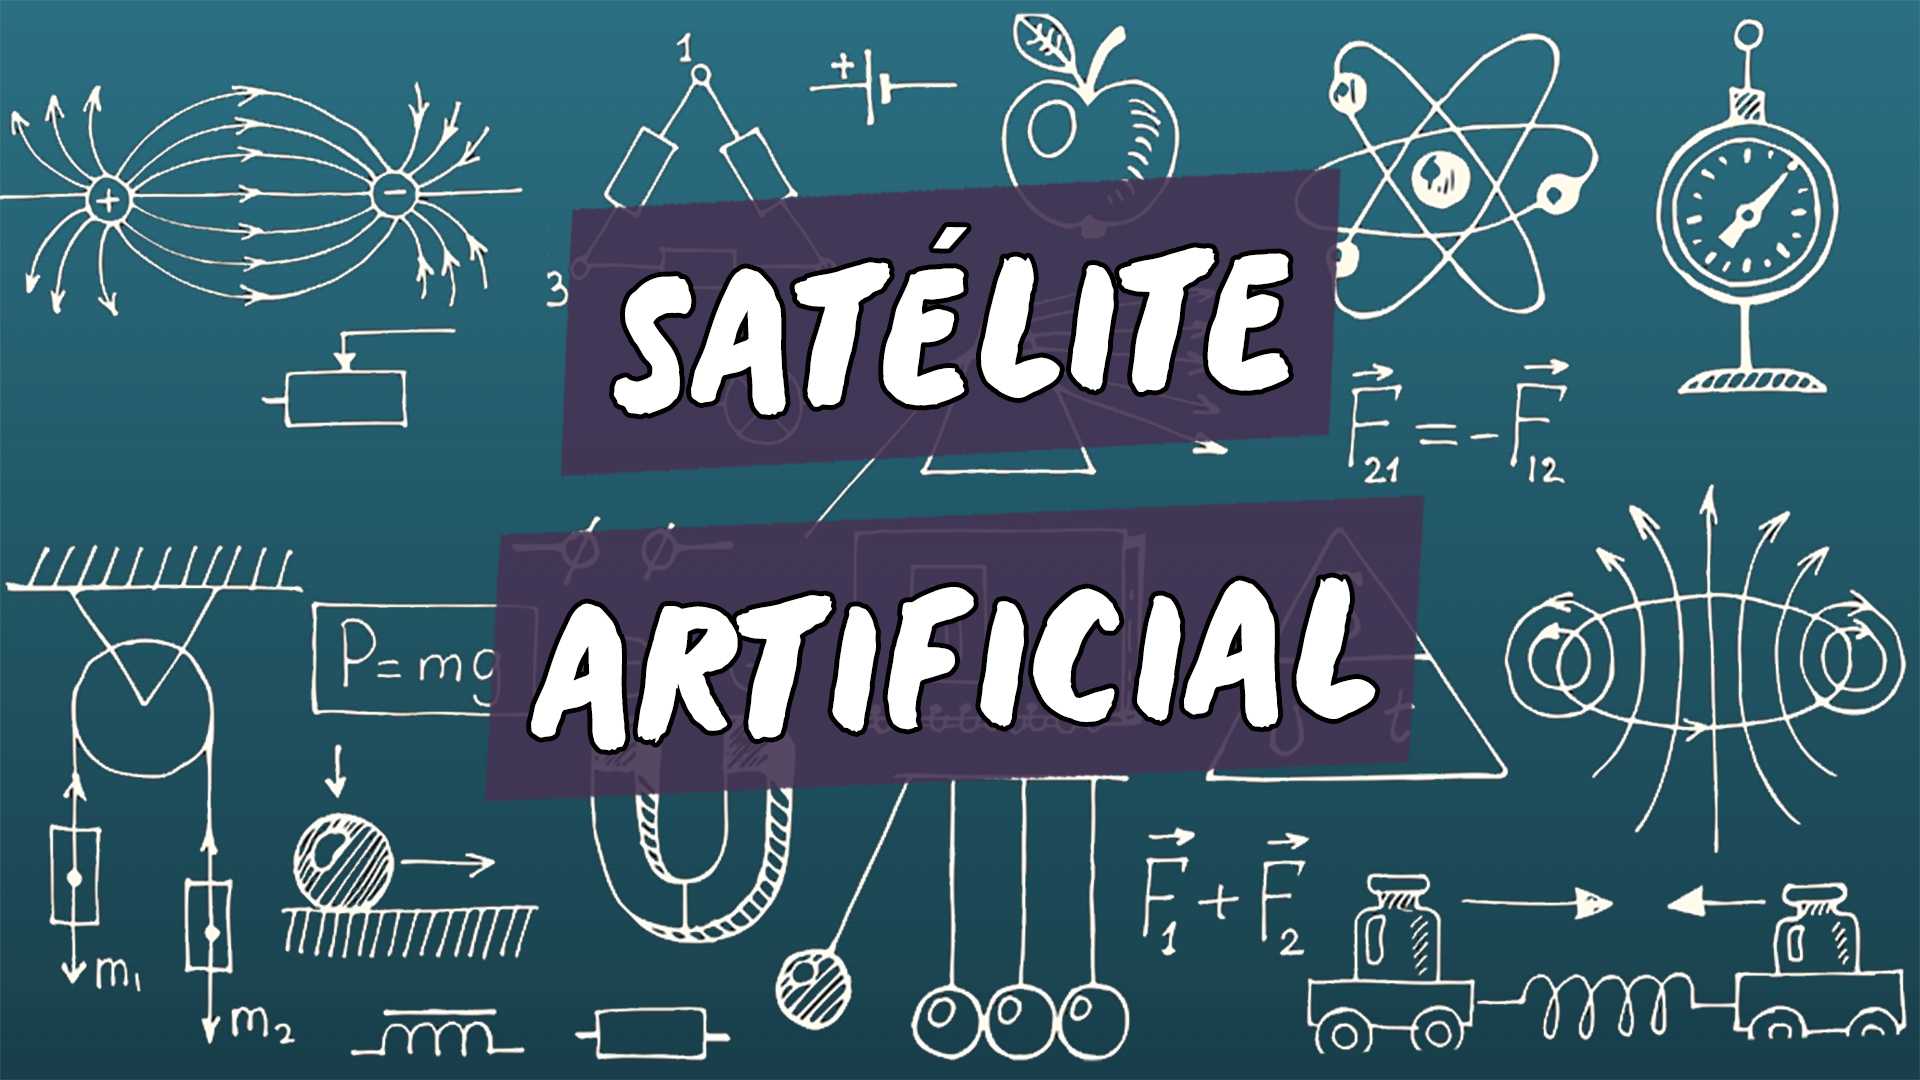 Escrito"Satélite Artificial" sobre uma representação de vários conceitos da área da física.